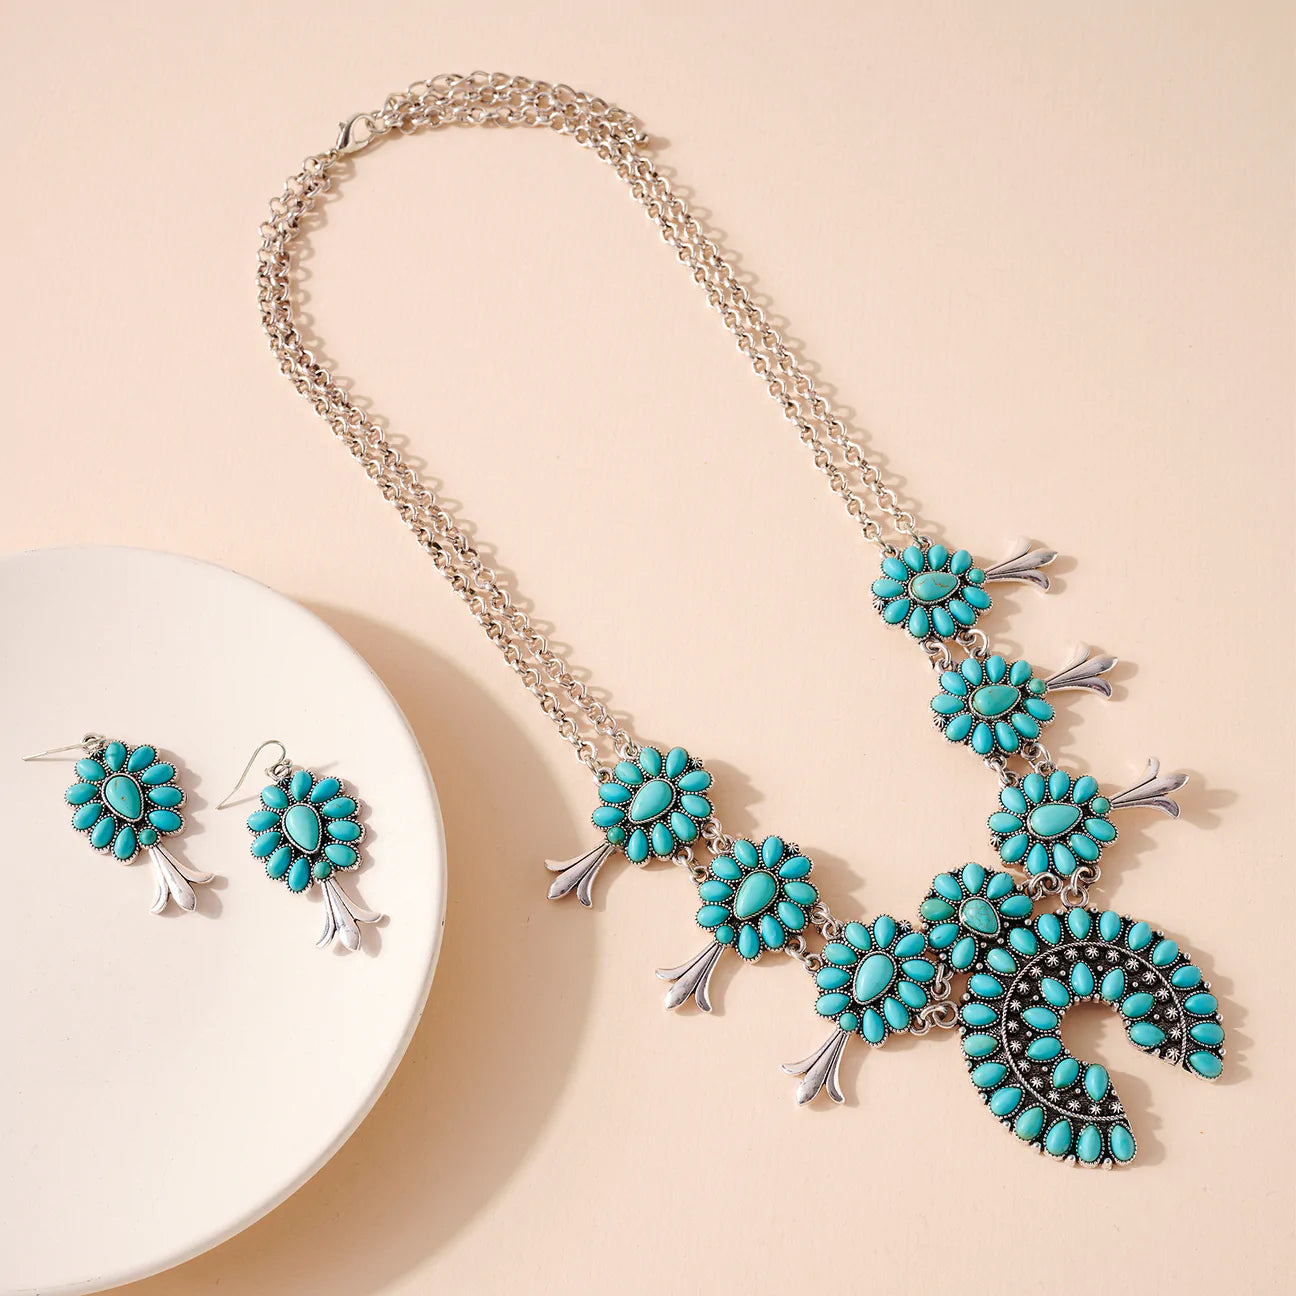 ‘ASHLEY’ Necklace & Earring Set